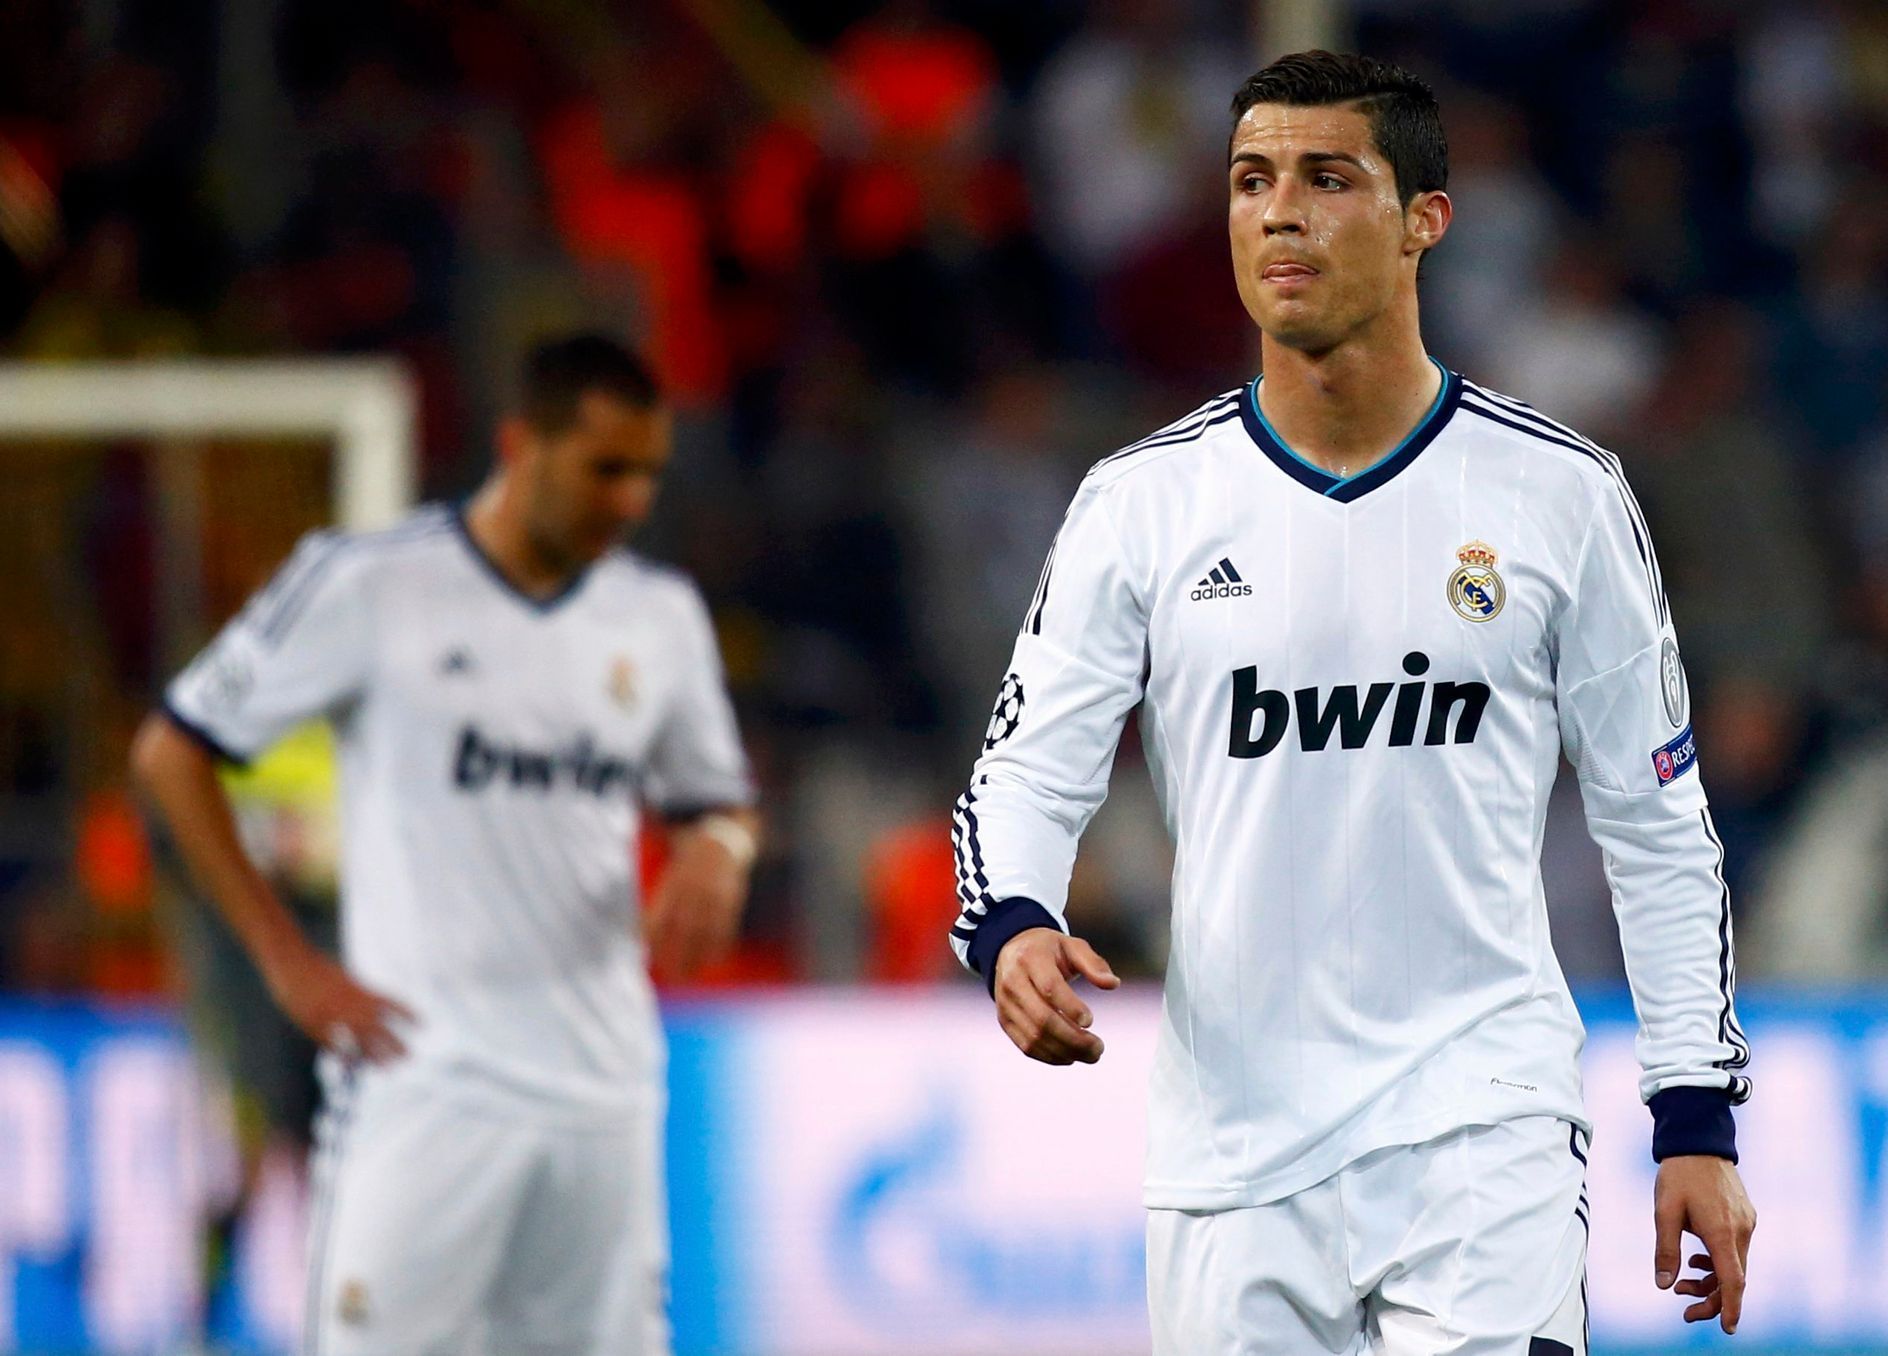 LM, Dortmund - Real: Cristiano Ronaldo